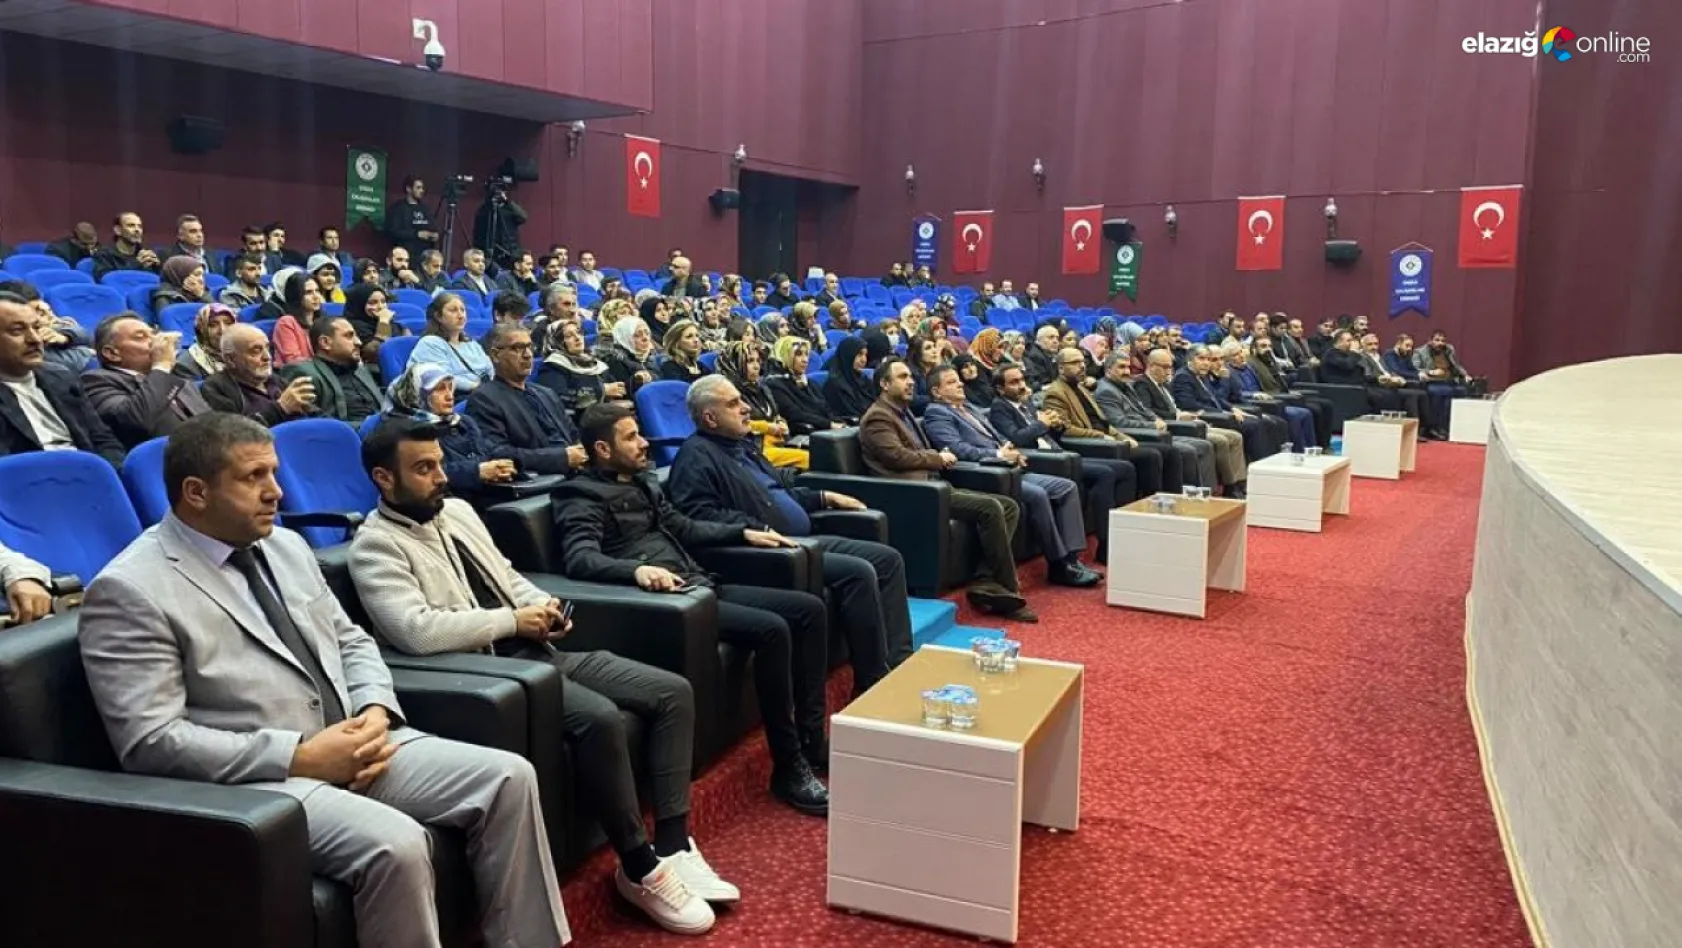 Elazığ'da, 'Enerji Çalışanları Haftası' dolayısıyla etkinlik düzenlendi